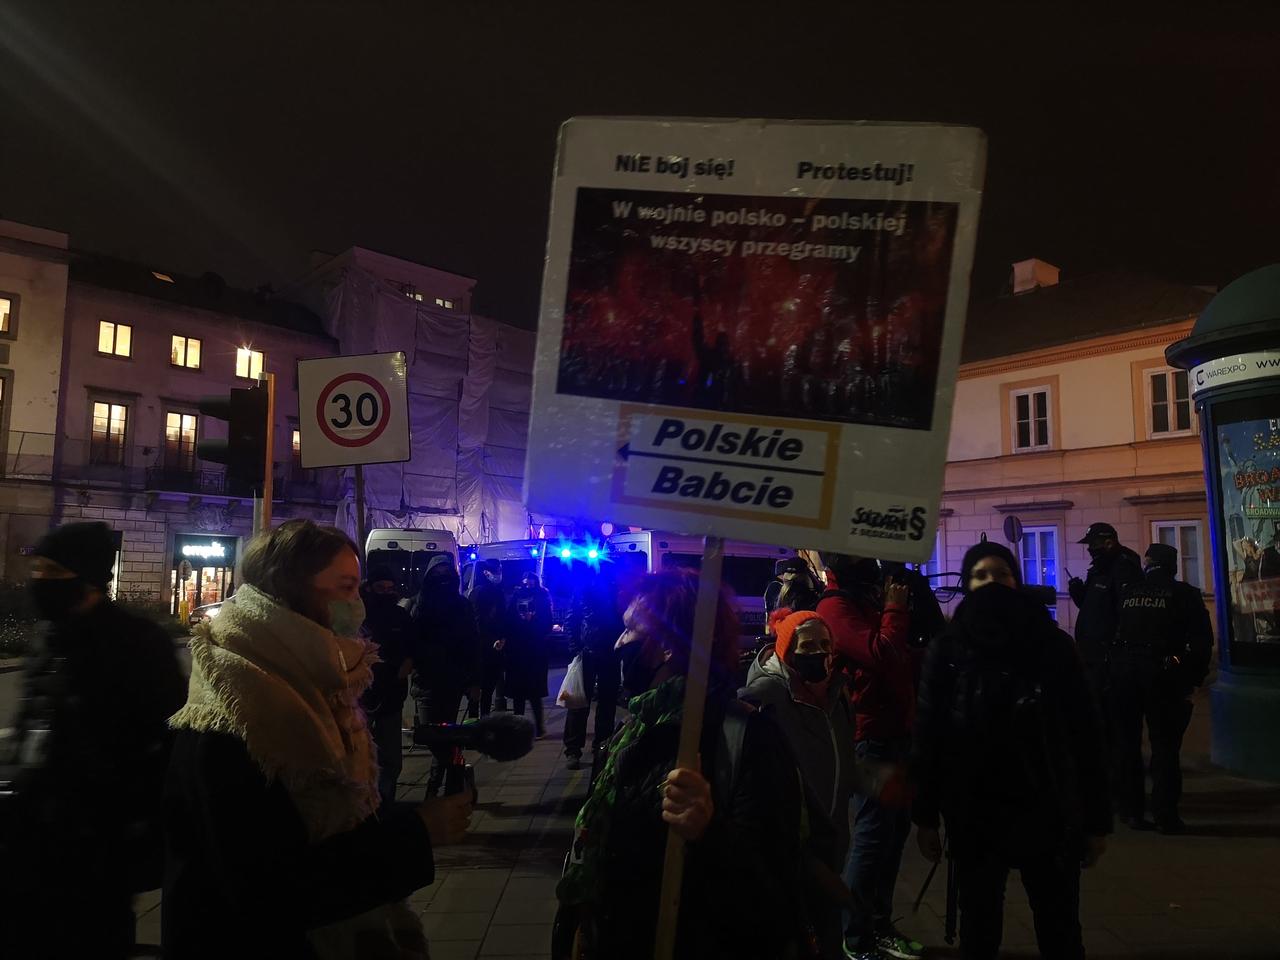 Polskie Babcie protestują w Warszawie 12.11.2020. Gdzie odbywa się protest? [ZDJĘCIA]